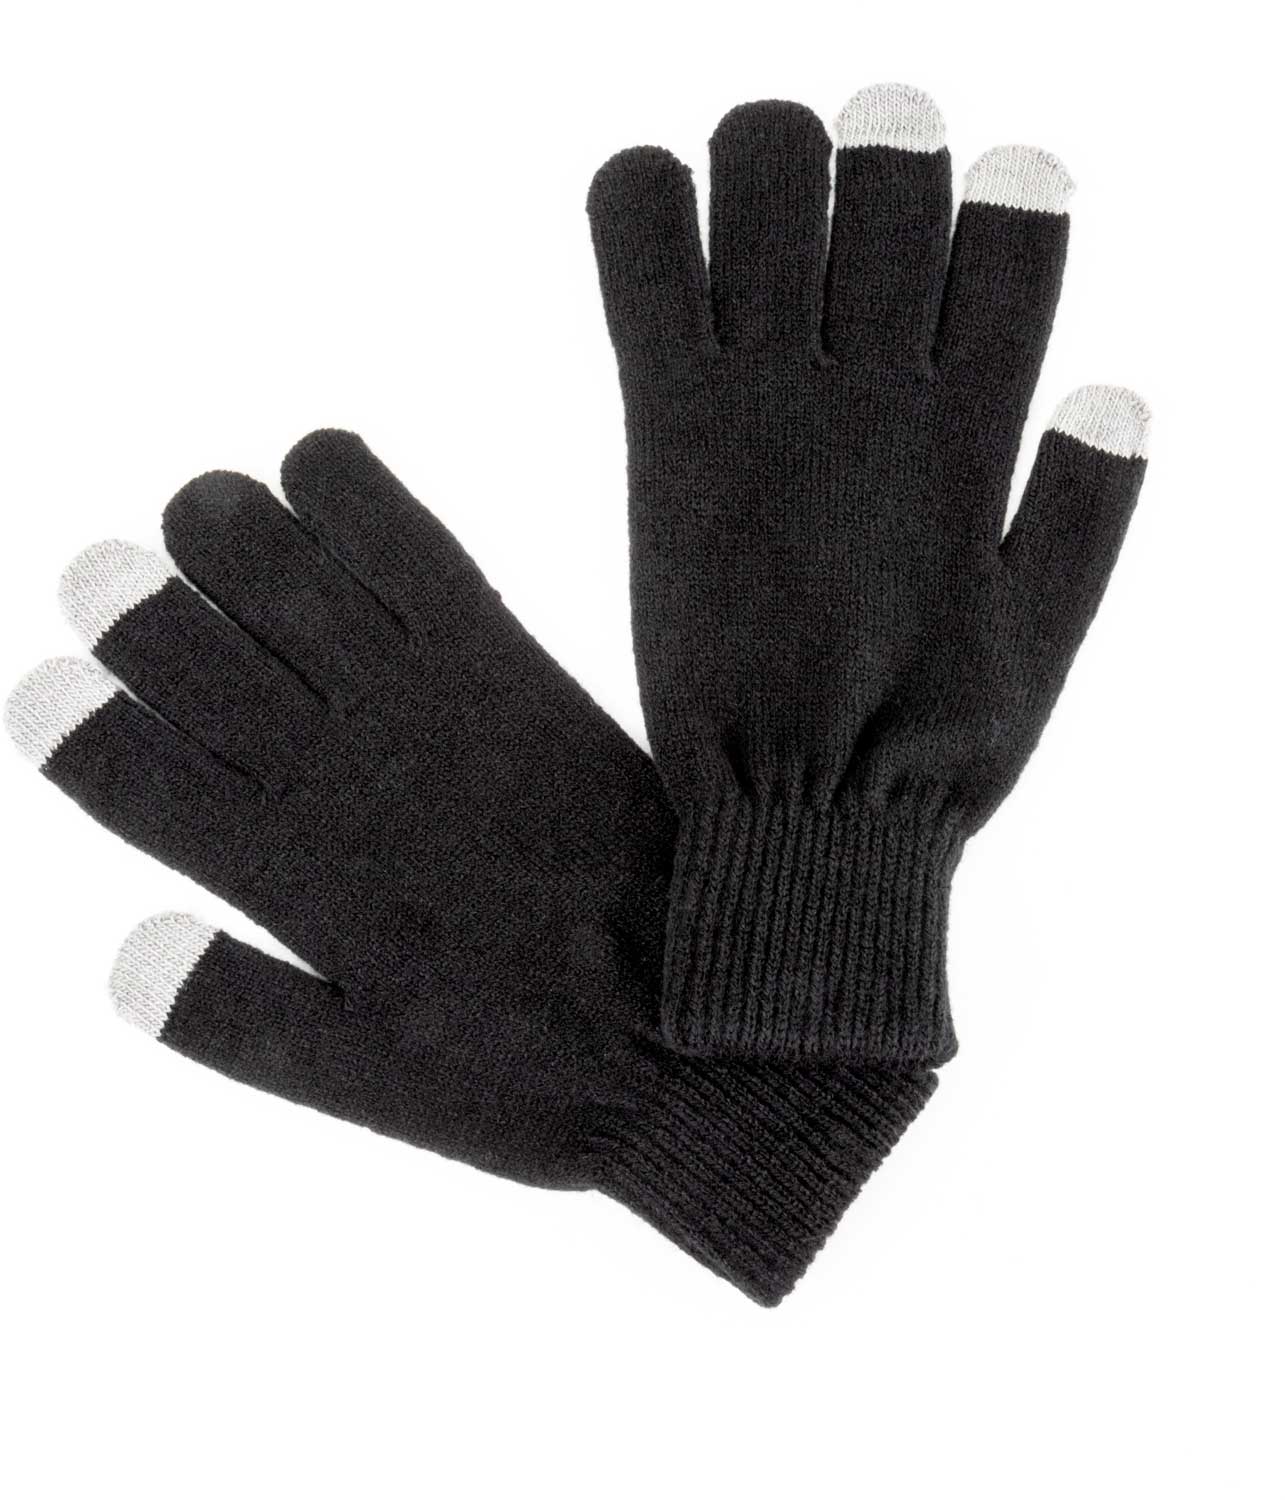 Men’s knitted winter gloves